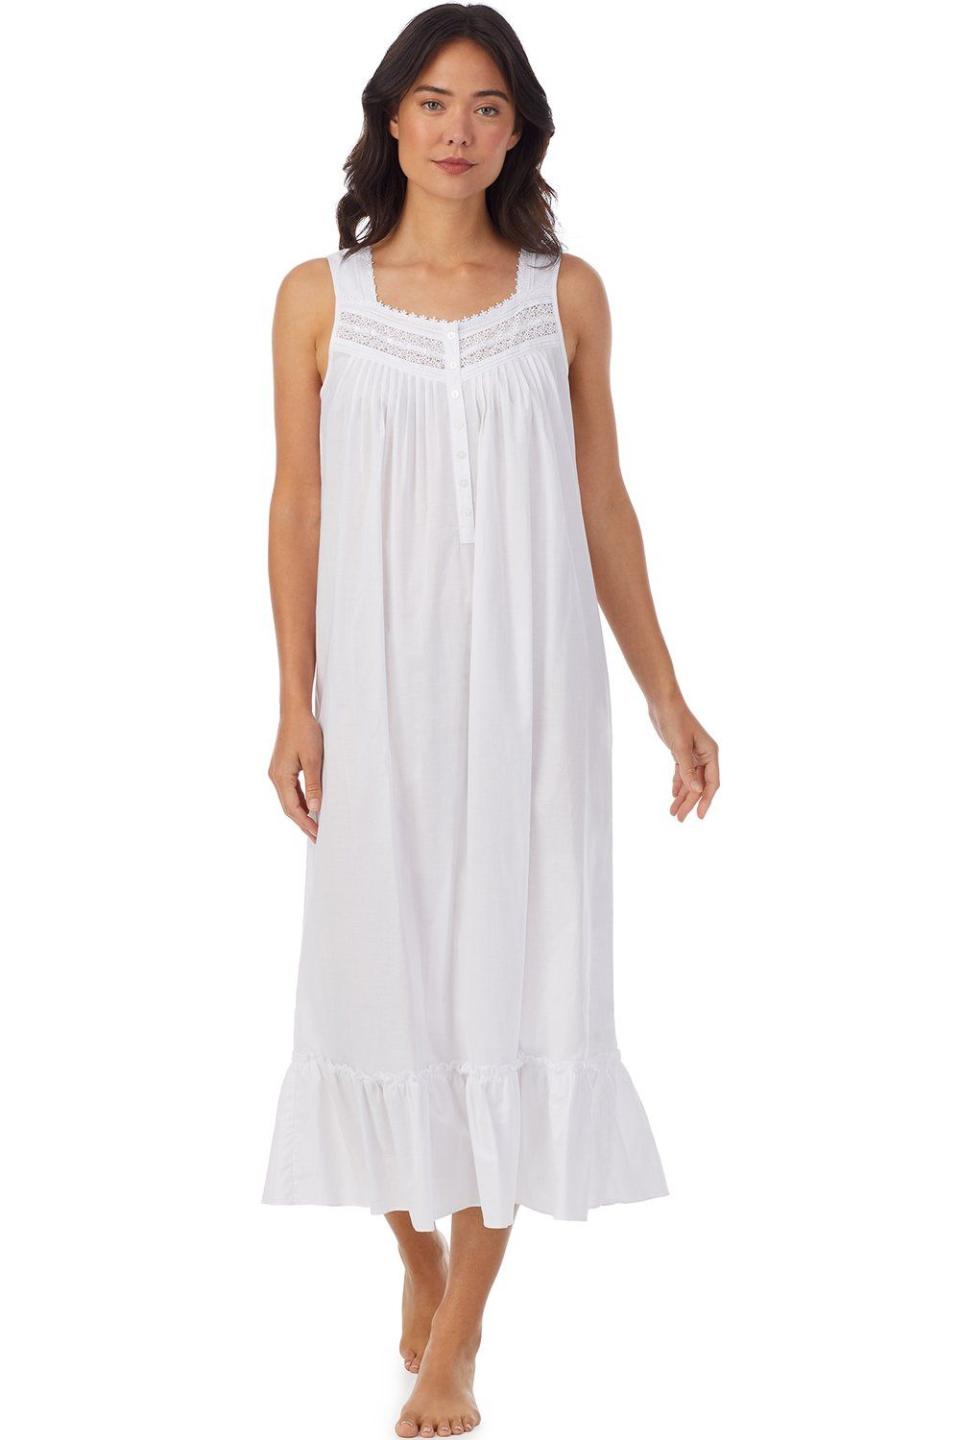 Brighton White Ballet Nightgown